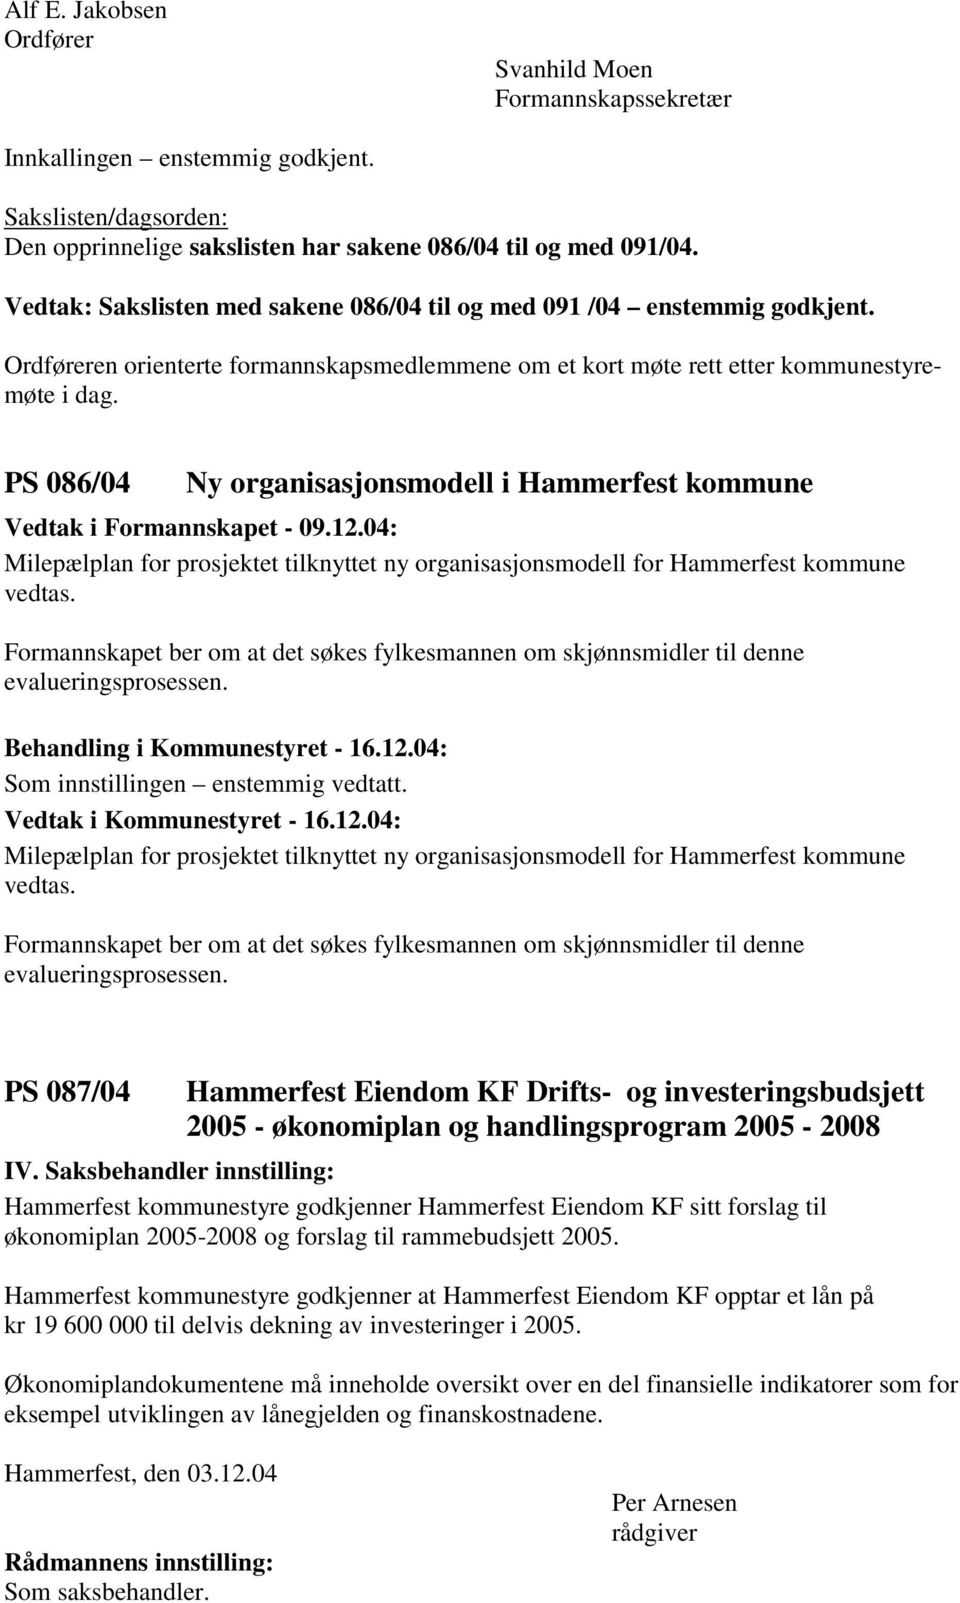 PS 086/04 Ny organisasjonsmodell i Hammerfest kommune Vedtak i Formannskapet - 09.12.04: Milepælplan for prosjektet tilknyttet ny organisasjonsmodell for Hammerfest kommune vedtas.